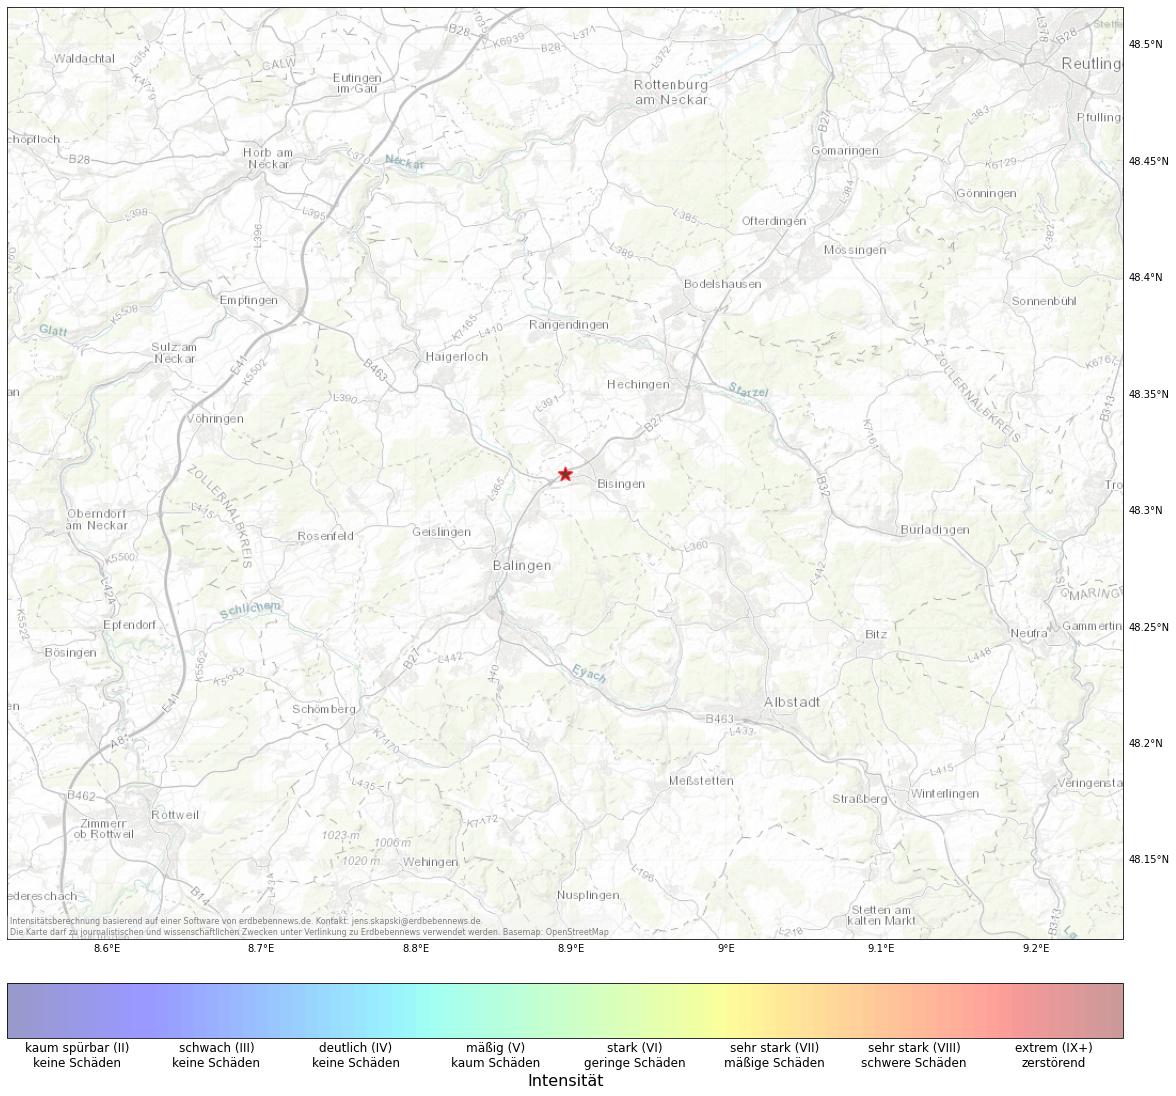 Berechnete Intensität (ShakeMap) des Erdbebens der Stärke 1.9 am 14. November, 03:12 in Deutschland